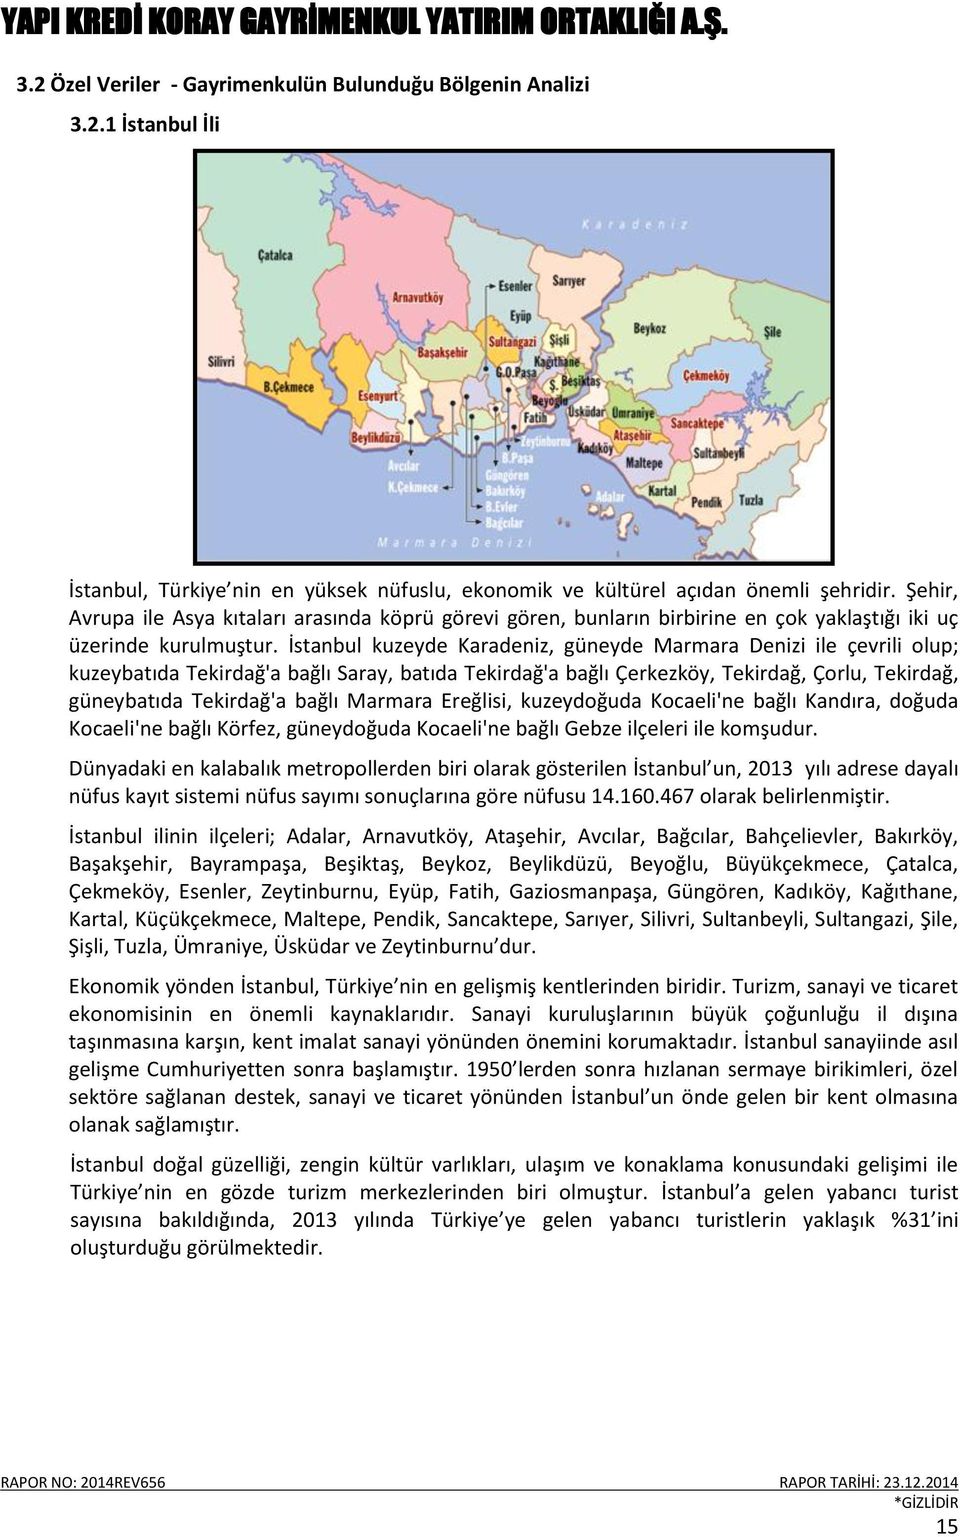 İstanbul kuzeyde Karadeniz, güneyde Marmara Denizi ile çevrili olup; kuzeybatıda Tekirdağ'a bağlı Saray, batıda Tekirdağ'a bağlı Çerkezköy, Tekirdağ, Çorlu, Tekirdağ, güneybatıda Tekirdağ'a bağlı